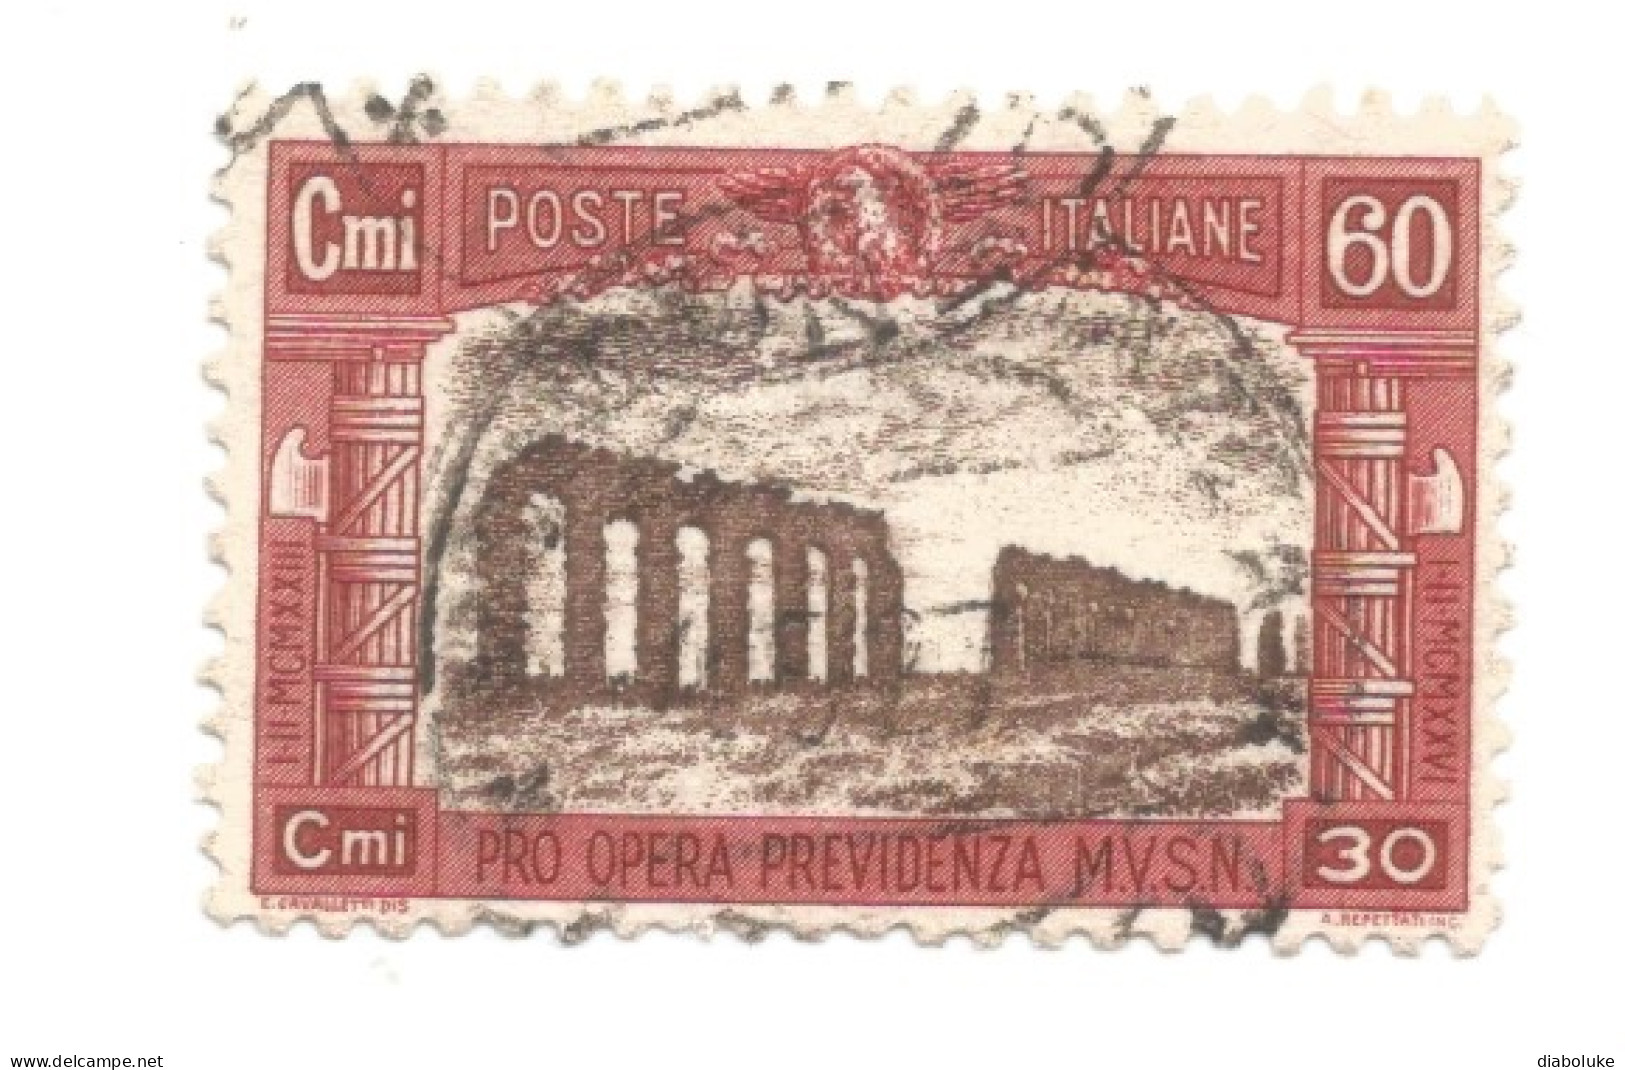 (REGNO D'ITALIA) 1926, PRO OPERA PREVIDENZIA MILIZIA - Serie Di 4 Francobolli Usati, Annulli Da Periziare - Luftpost